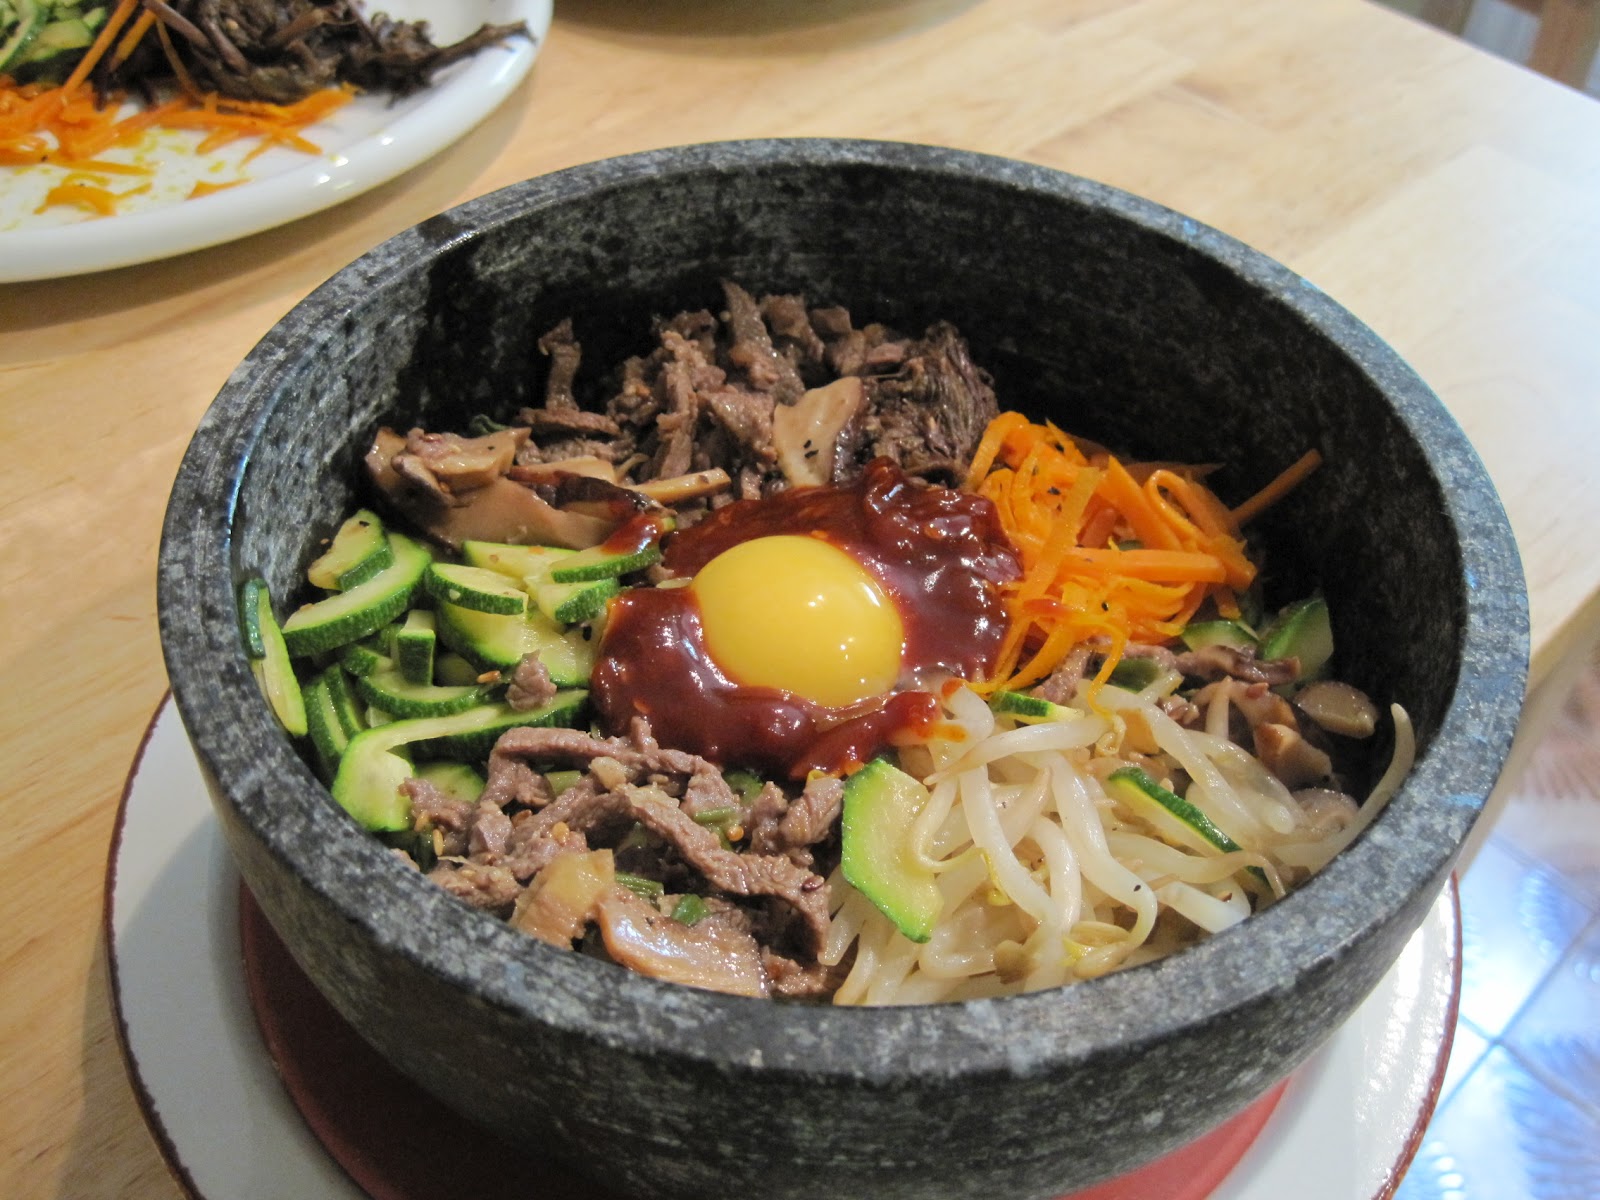 From Kimchi to Bulgogi, Korean Cuisine Gaining Steam - The Food Institute